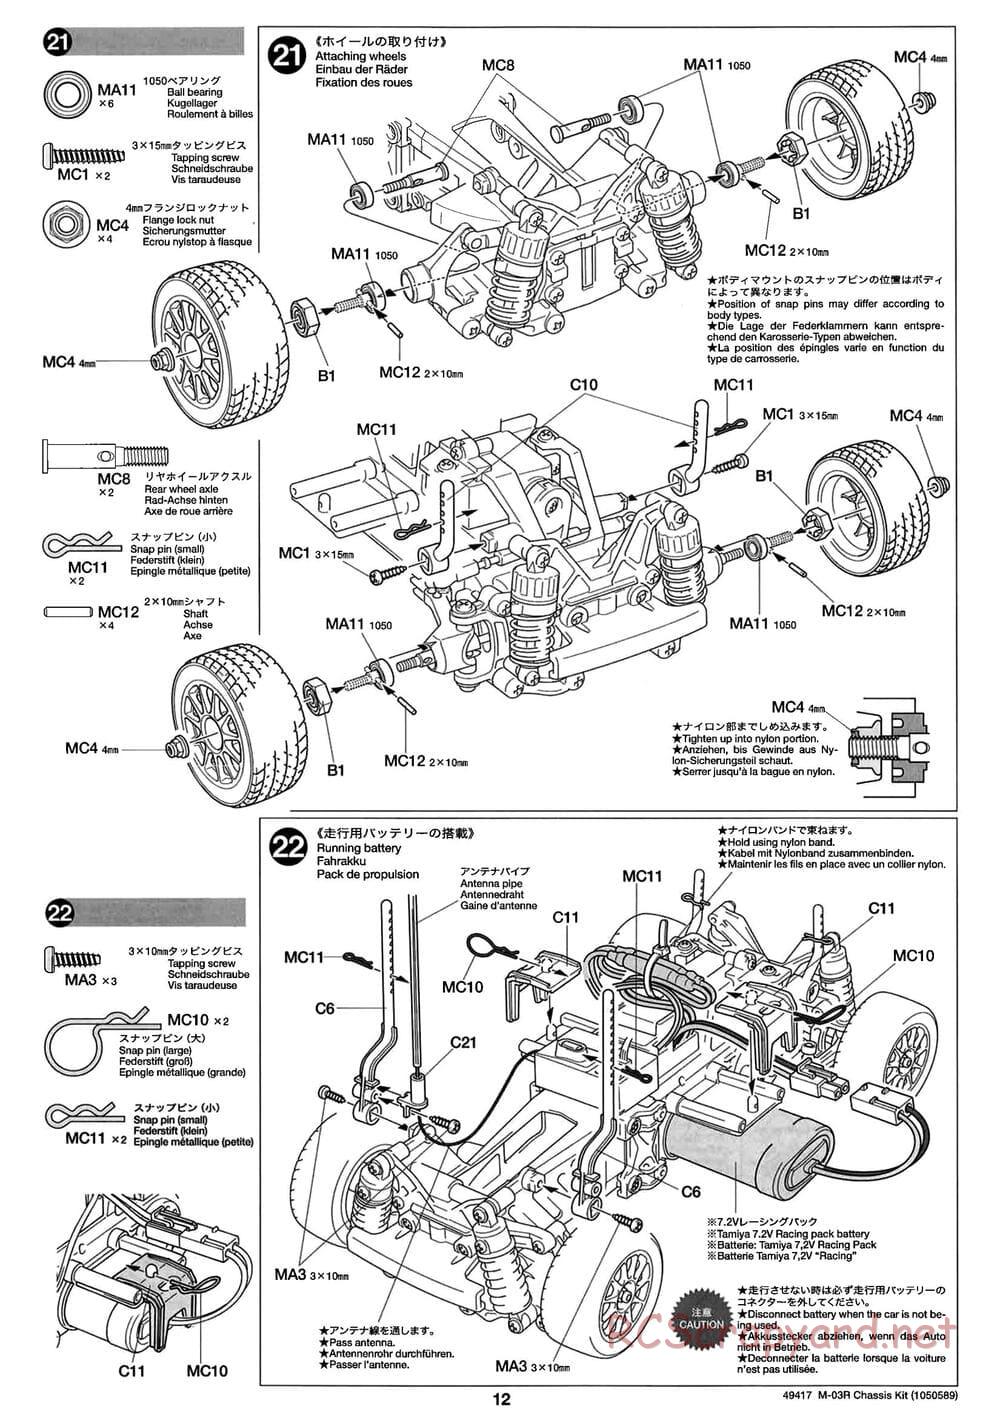 Tamiya - M-03R Chassis - Manual - Page 12